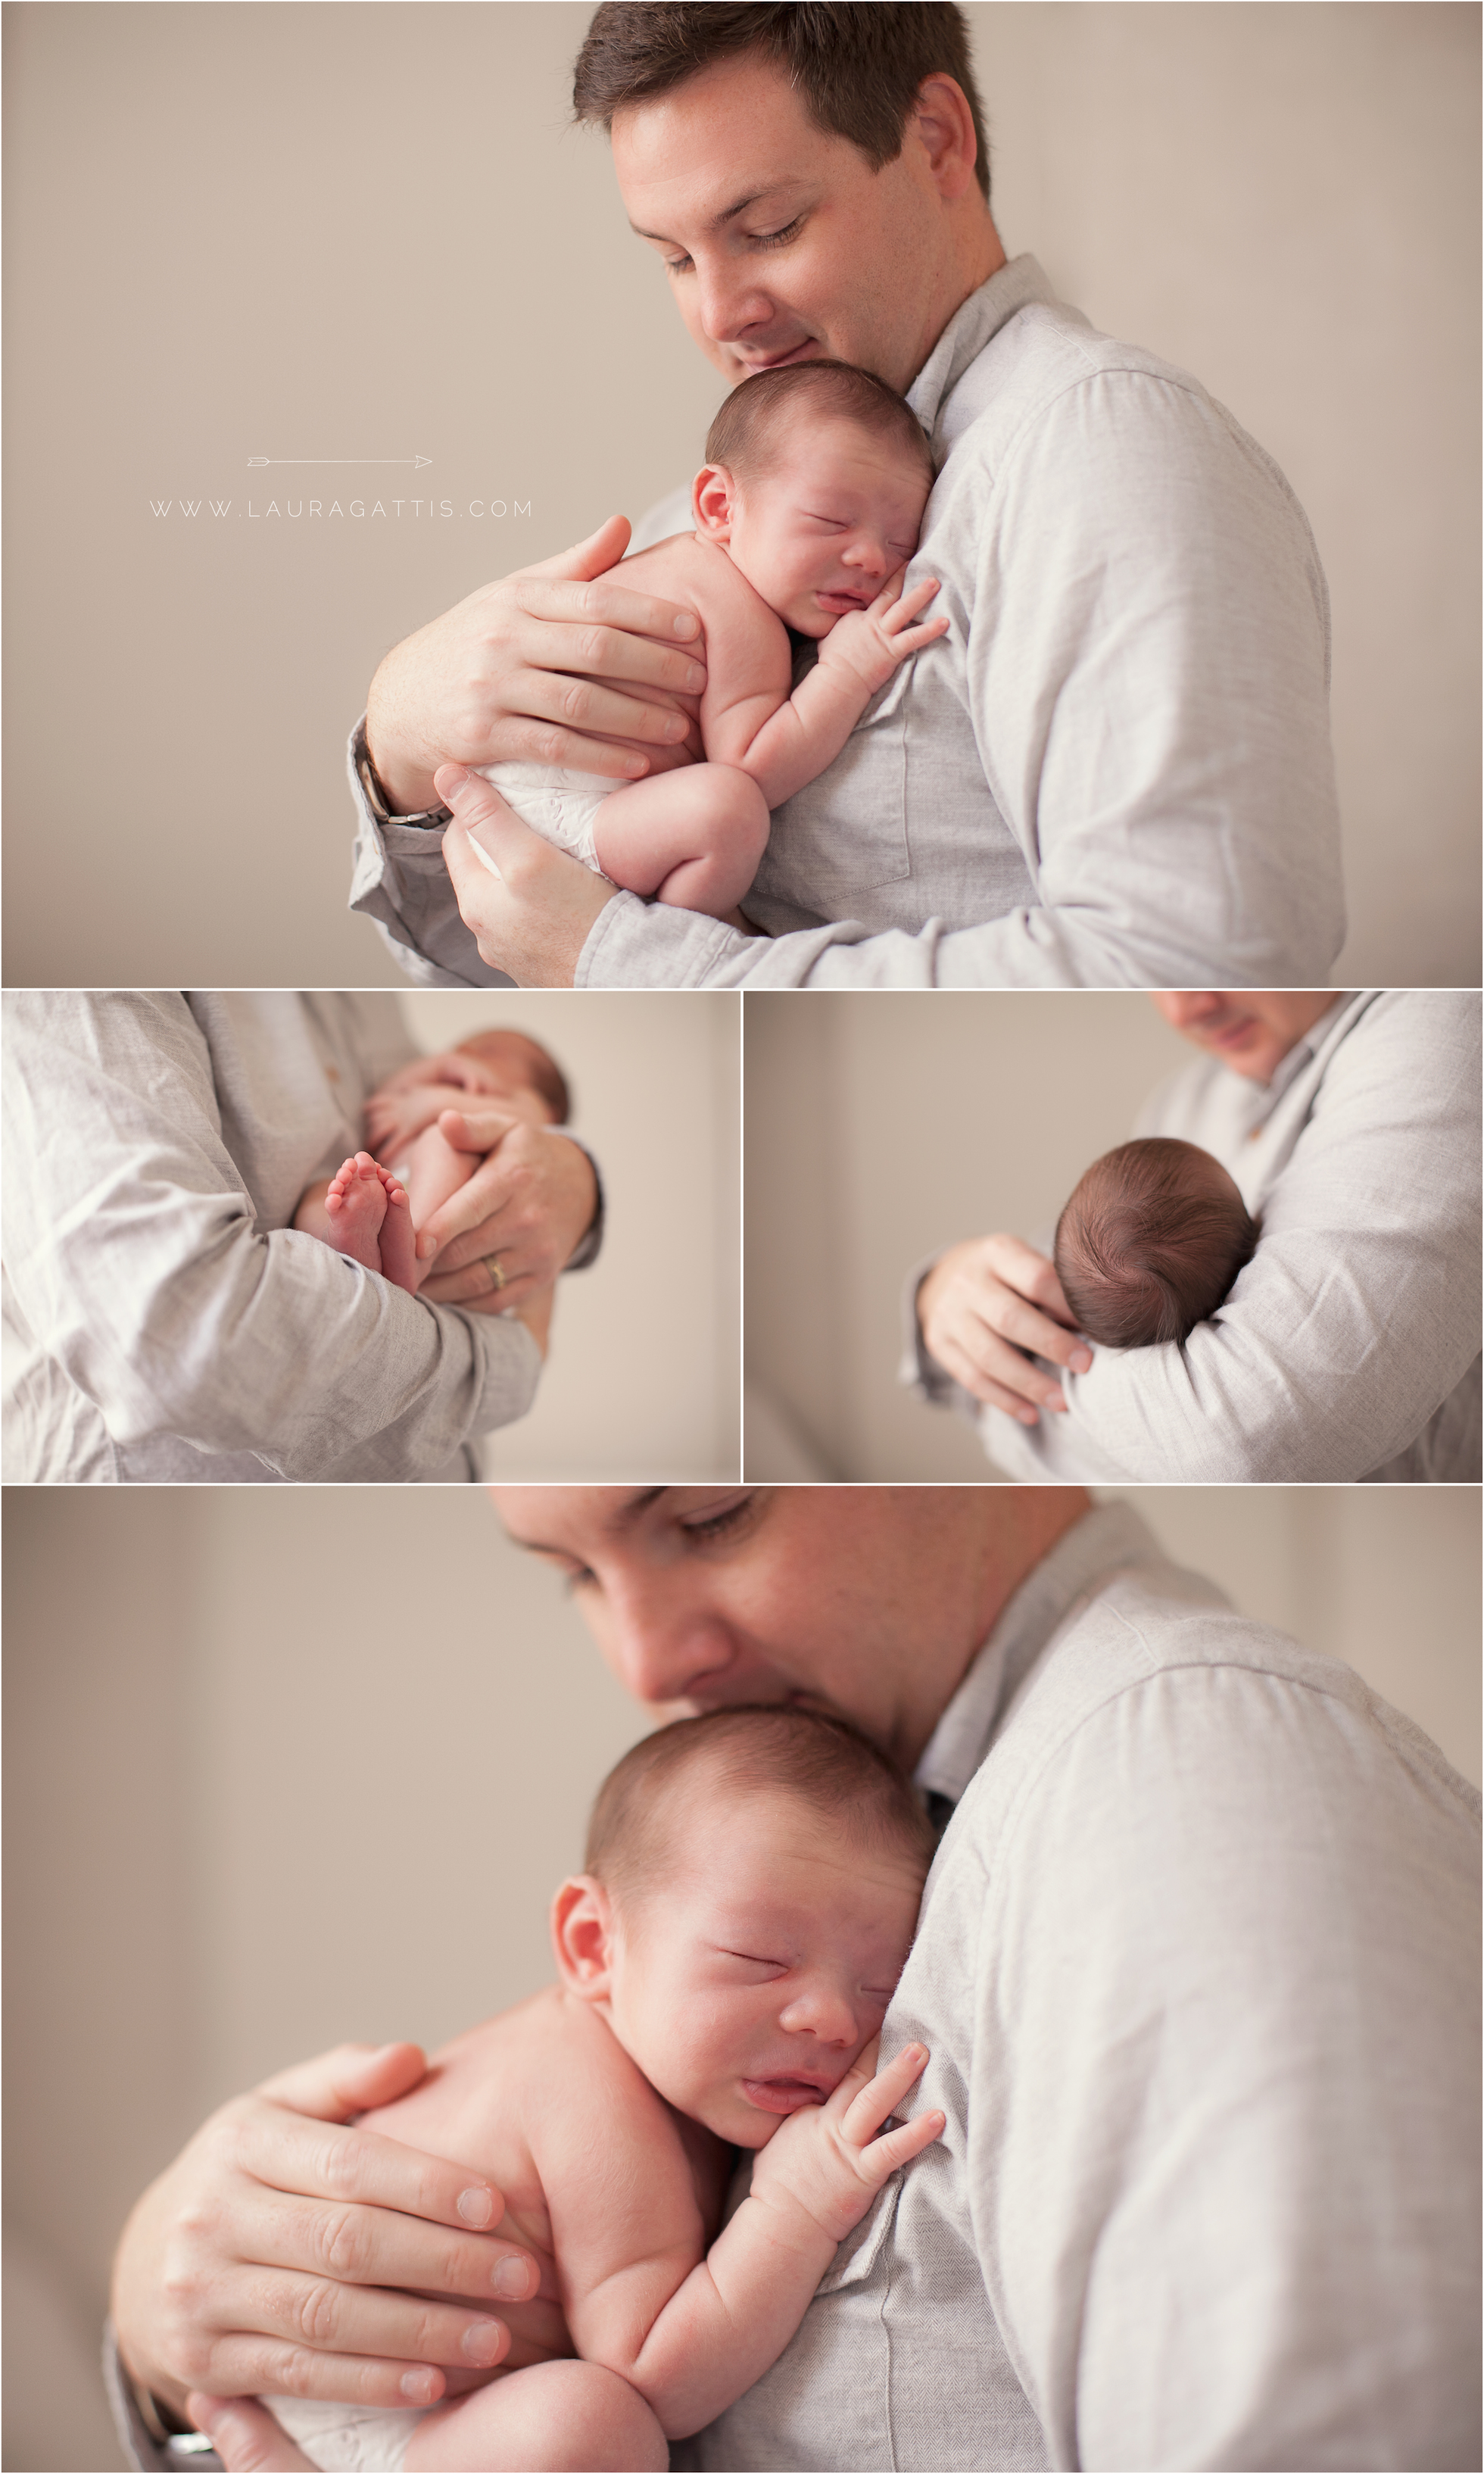 newborn & daddy | laura gattis photography | www.lauragattis.com